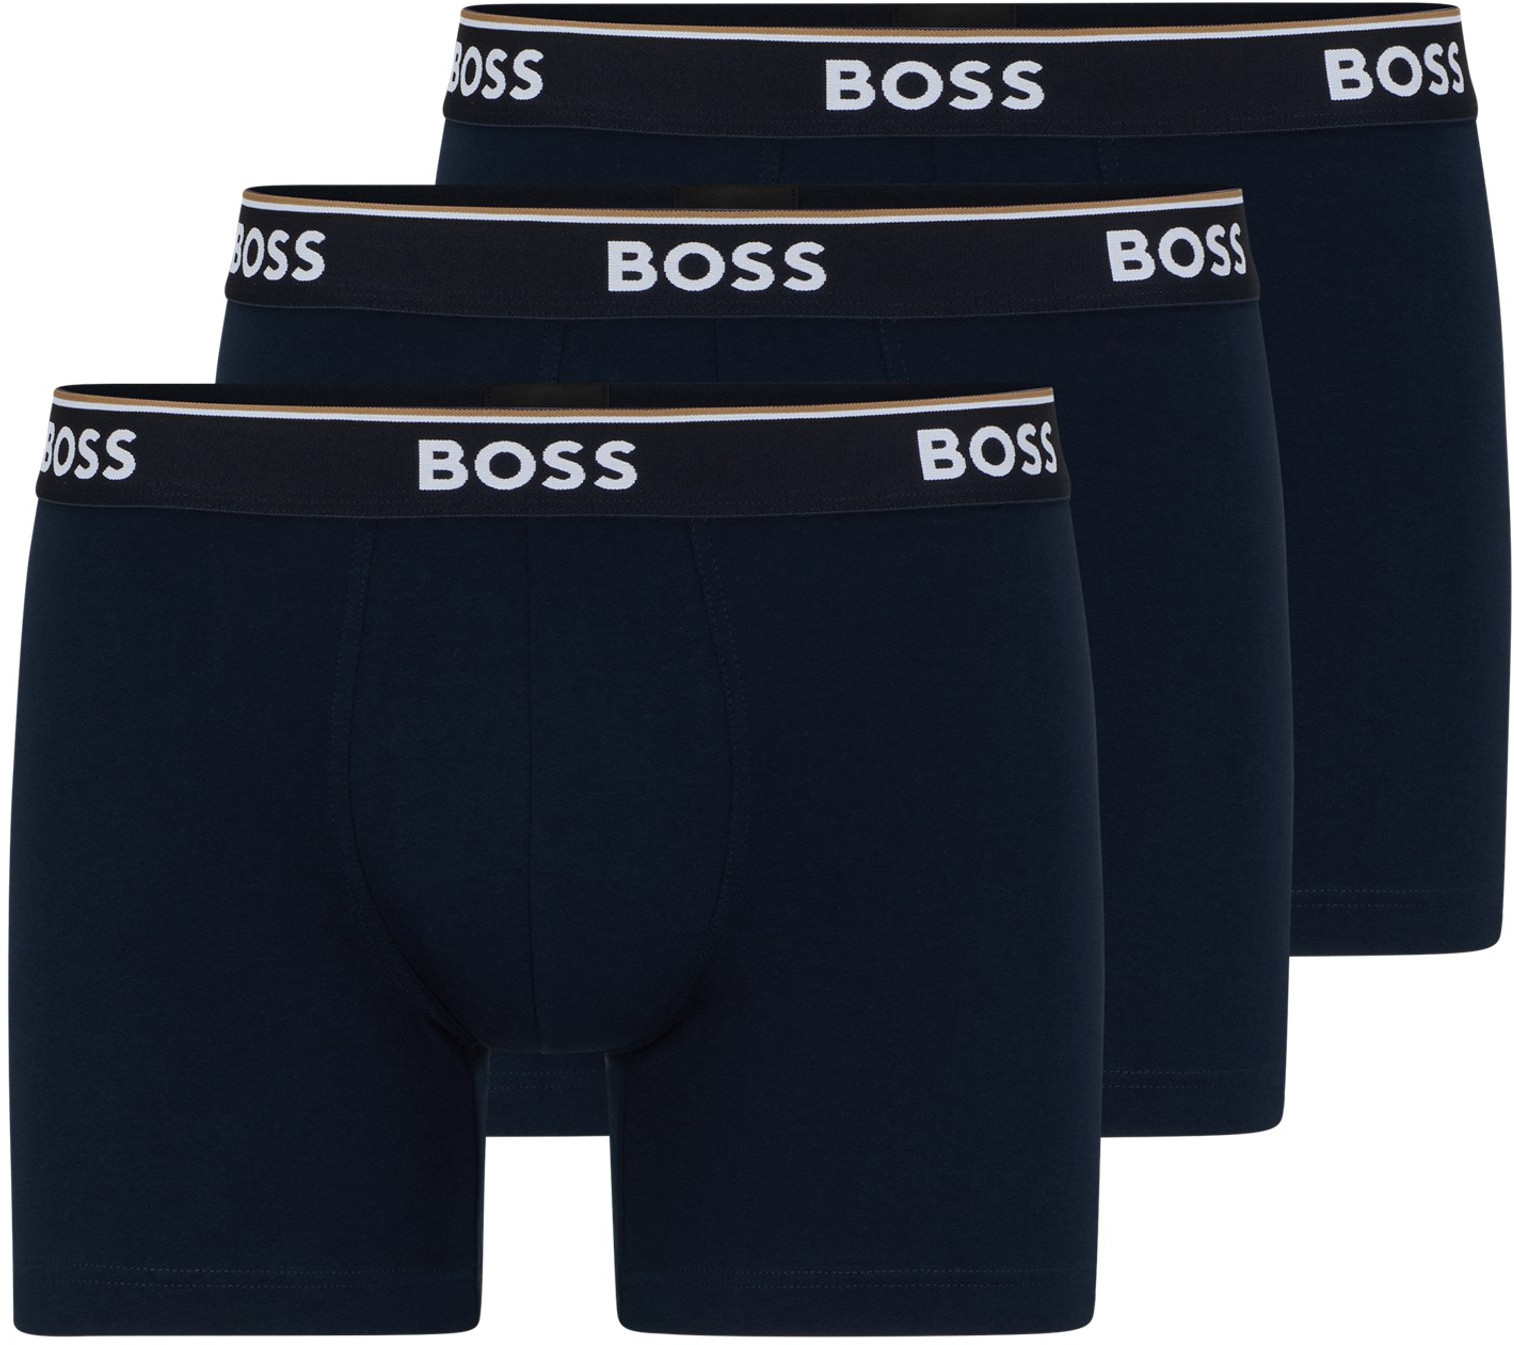 Hugo Boss 3 PACK - pánske boxerky BOSS 50475282-480 XL